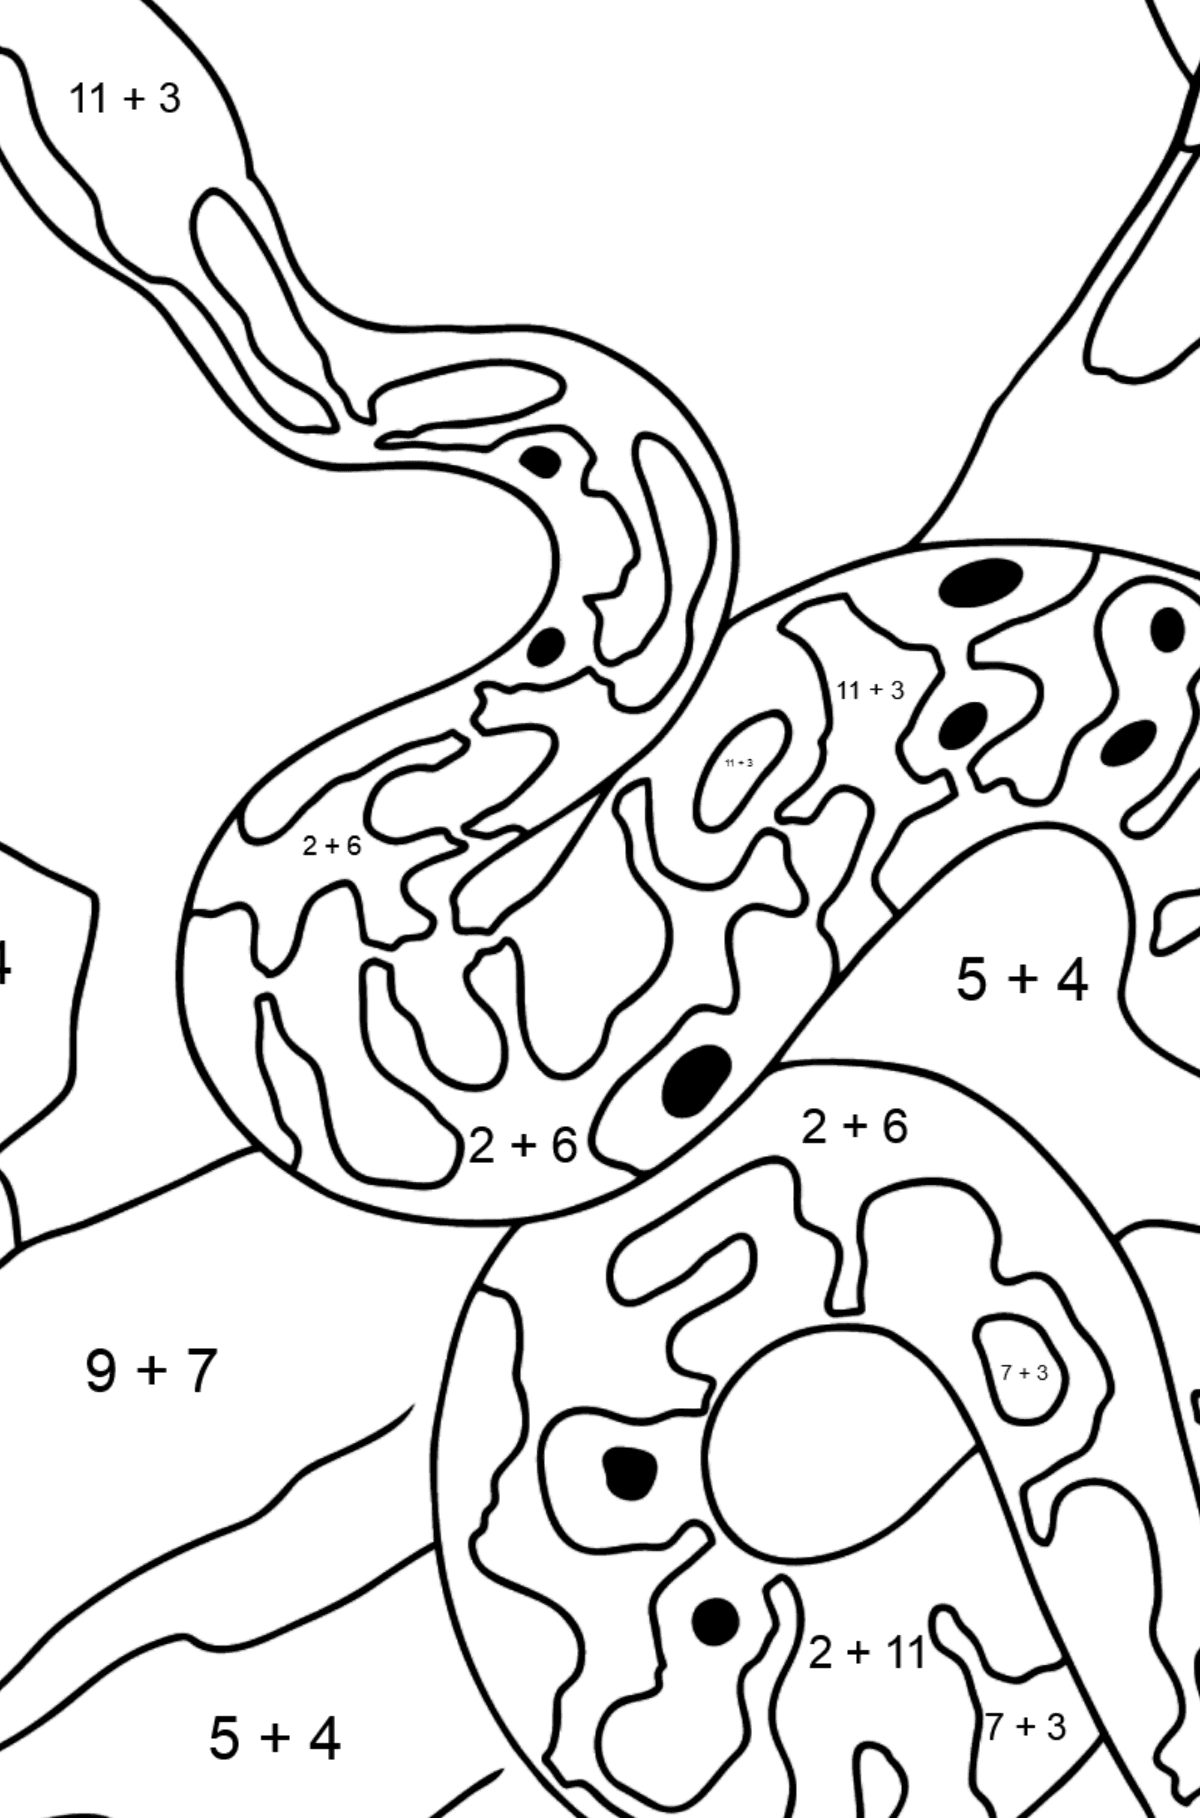 Disegno di Serpente da colorare - Colorazione matematica - Addizione per bambini